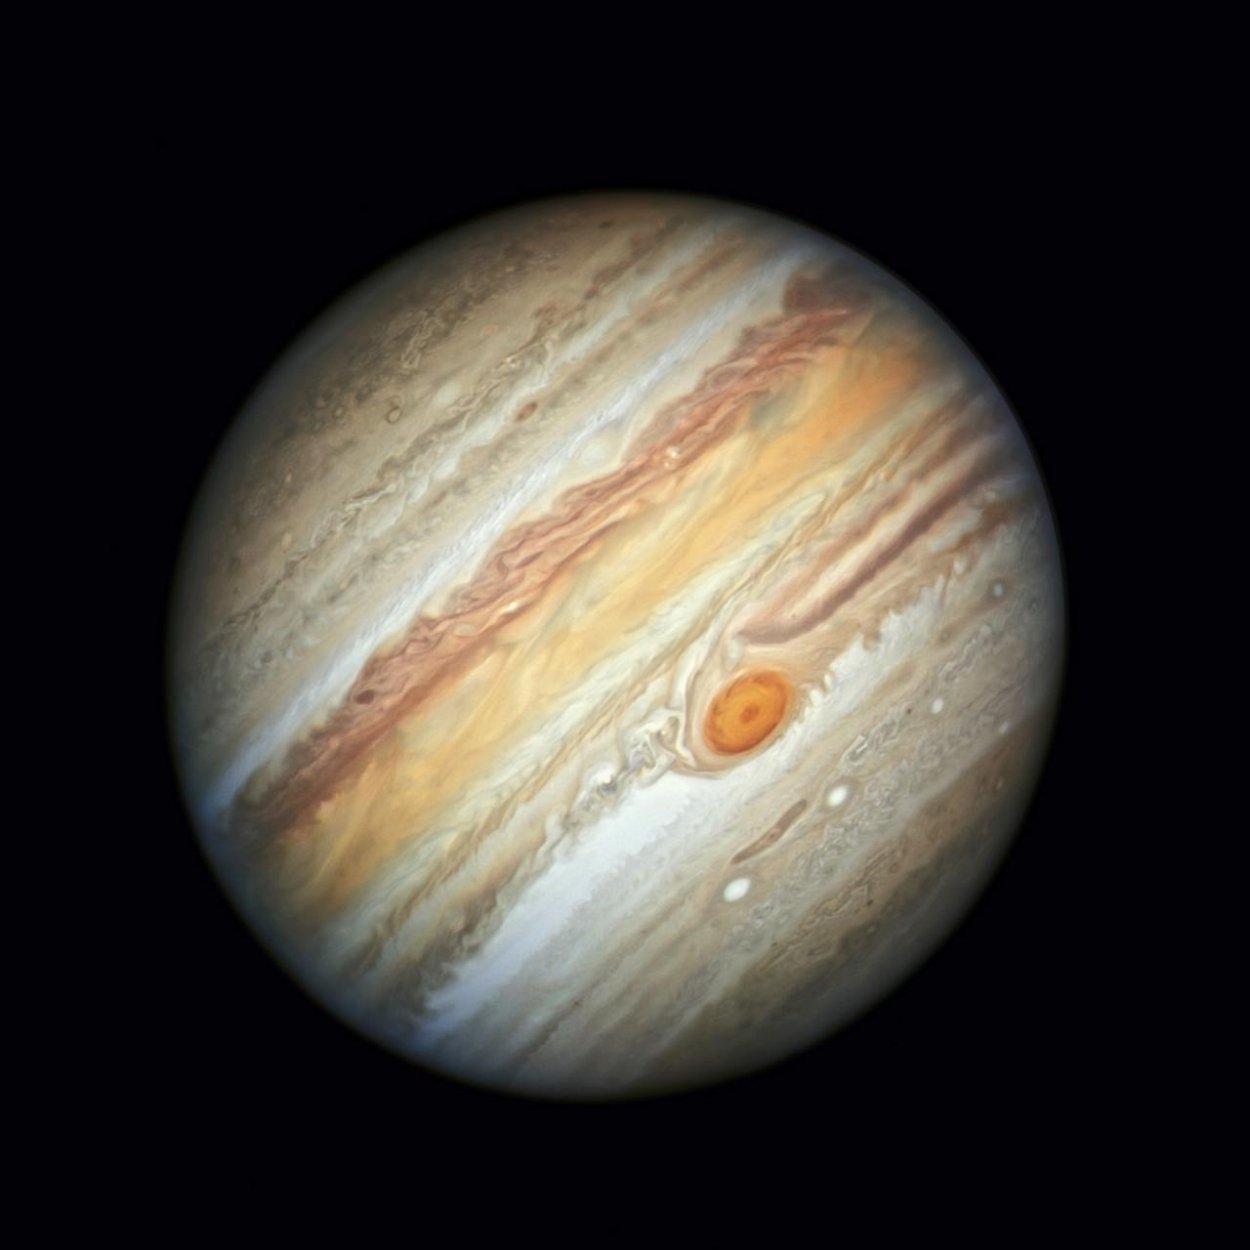 Objavili 12 nových mesiacov Jupitera, spolu ich má 92, čo je najviac v Slnečnej sústave